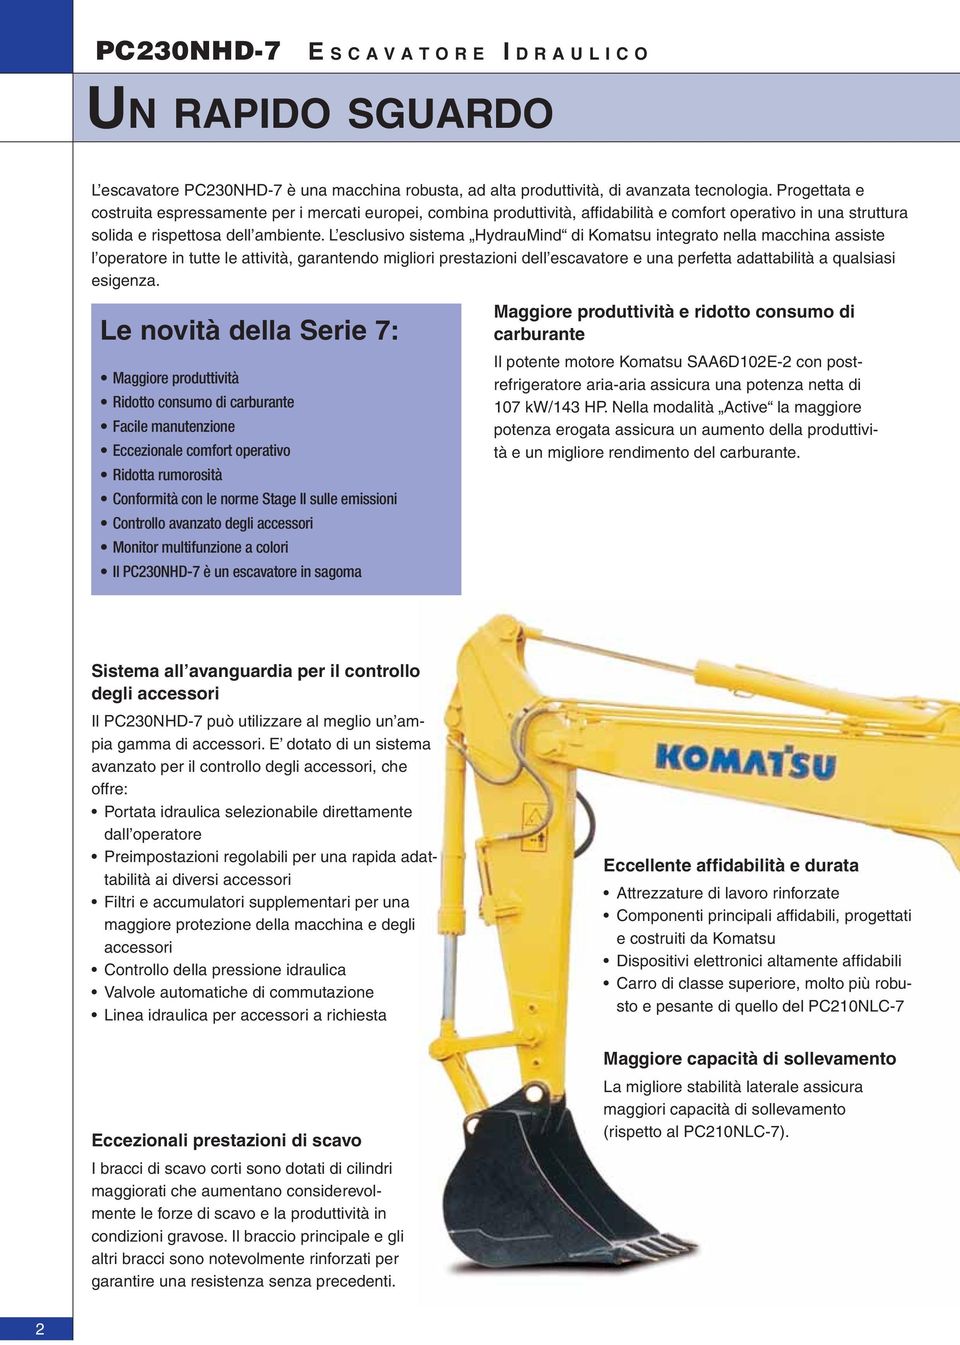 L esclusivo sistema HydrauMind di Komatsu integrato nella macchina assiste l operatore in tutte le attività, garantendo migliori prestazioni dell escavatore e una perfetta adattabilità a qualsiasi